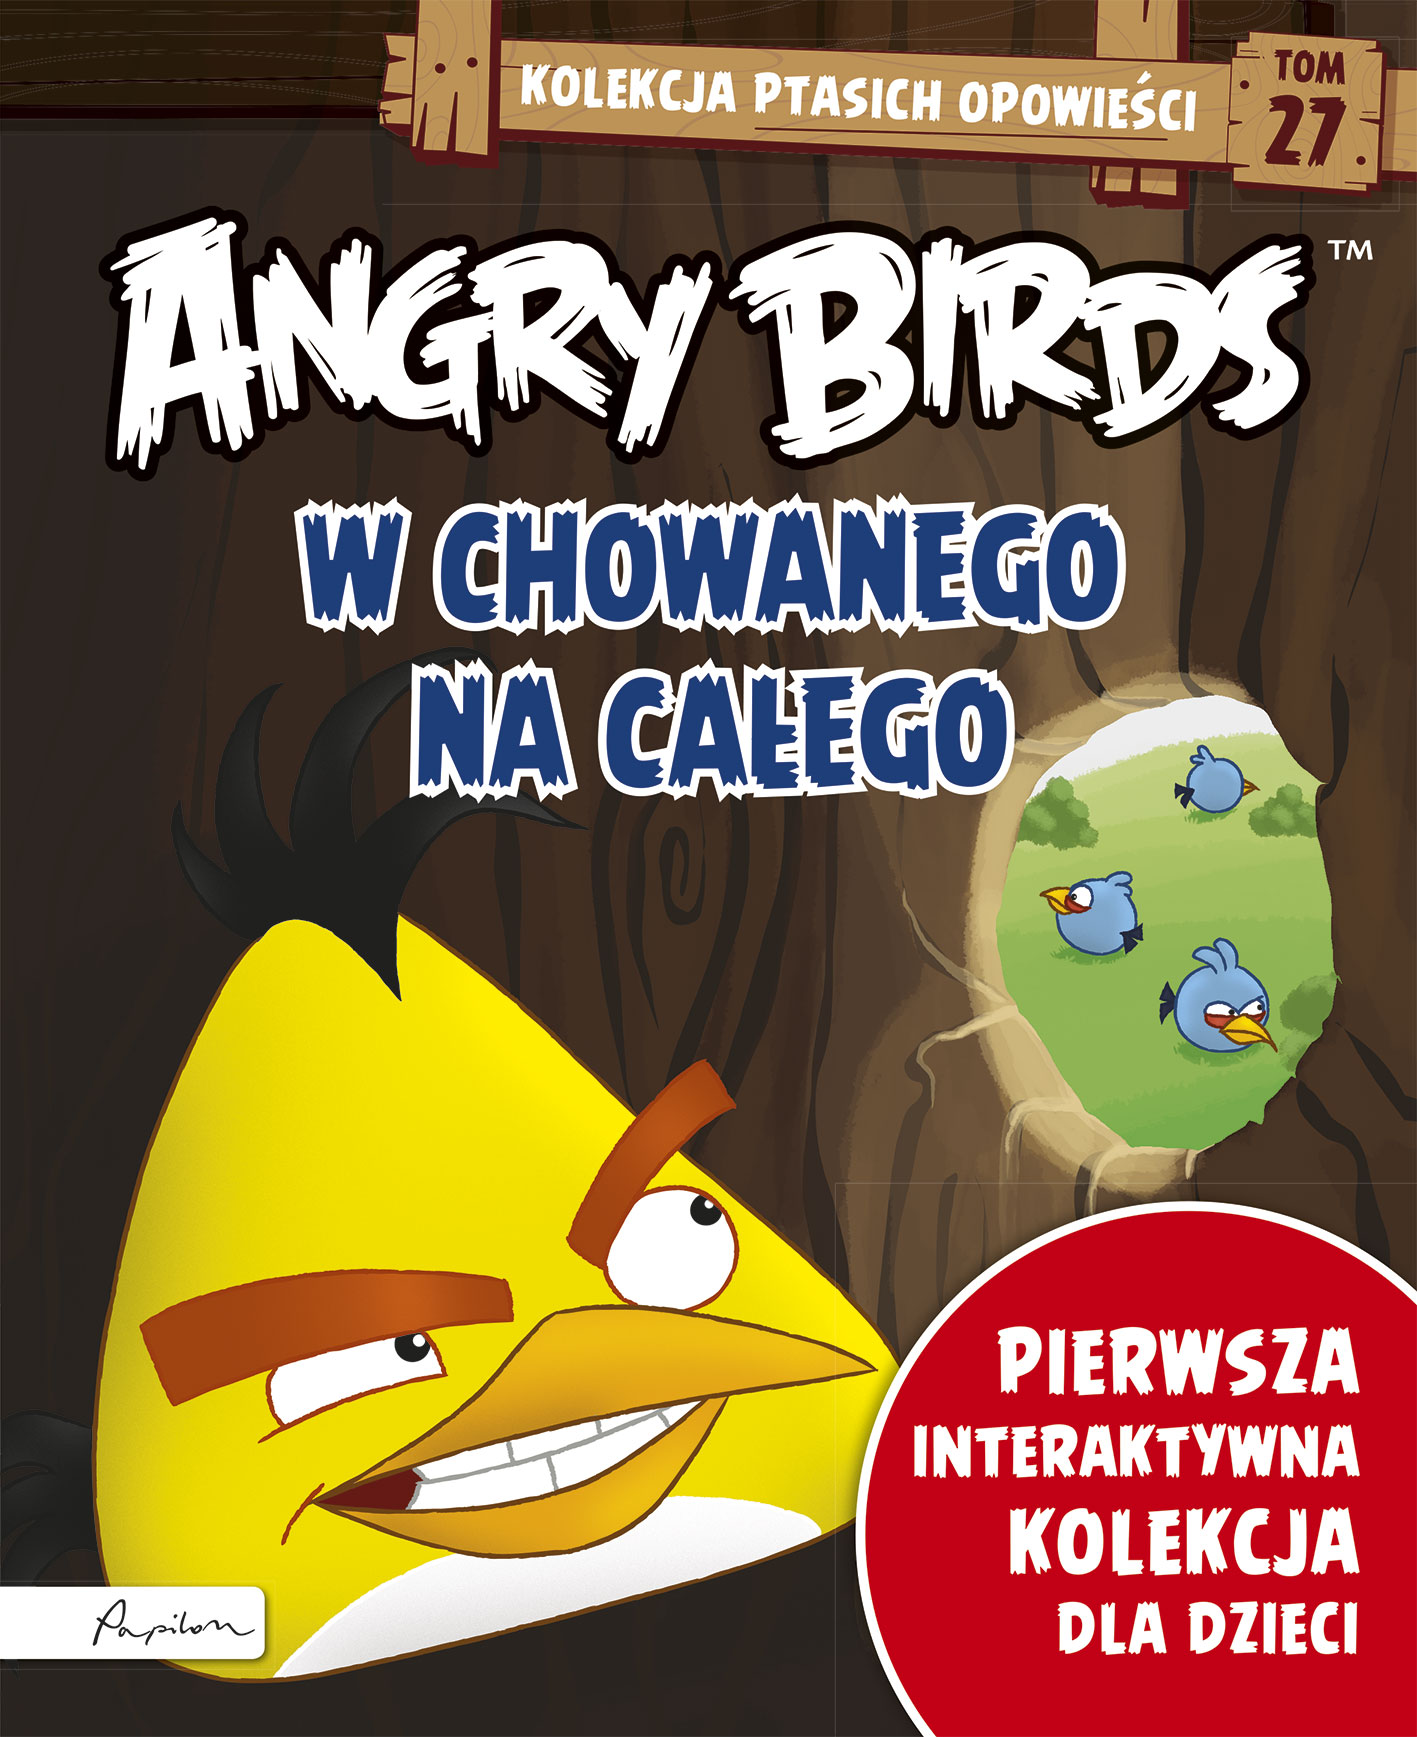 Angry Birds. Kolekcja ptasich opowieści 27. W chowanego na całego.